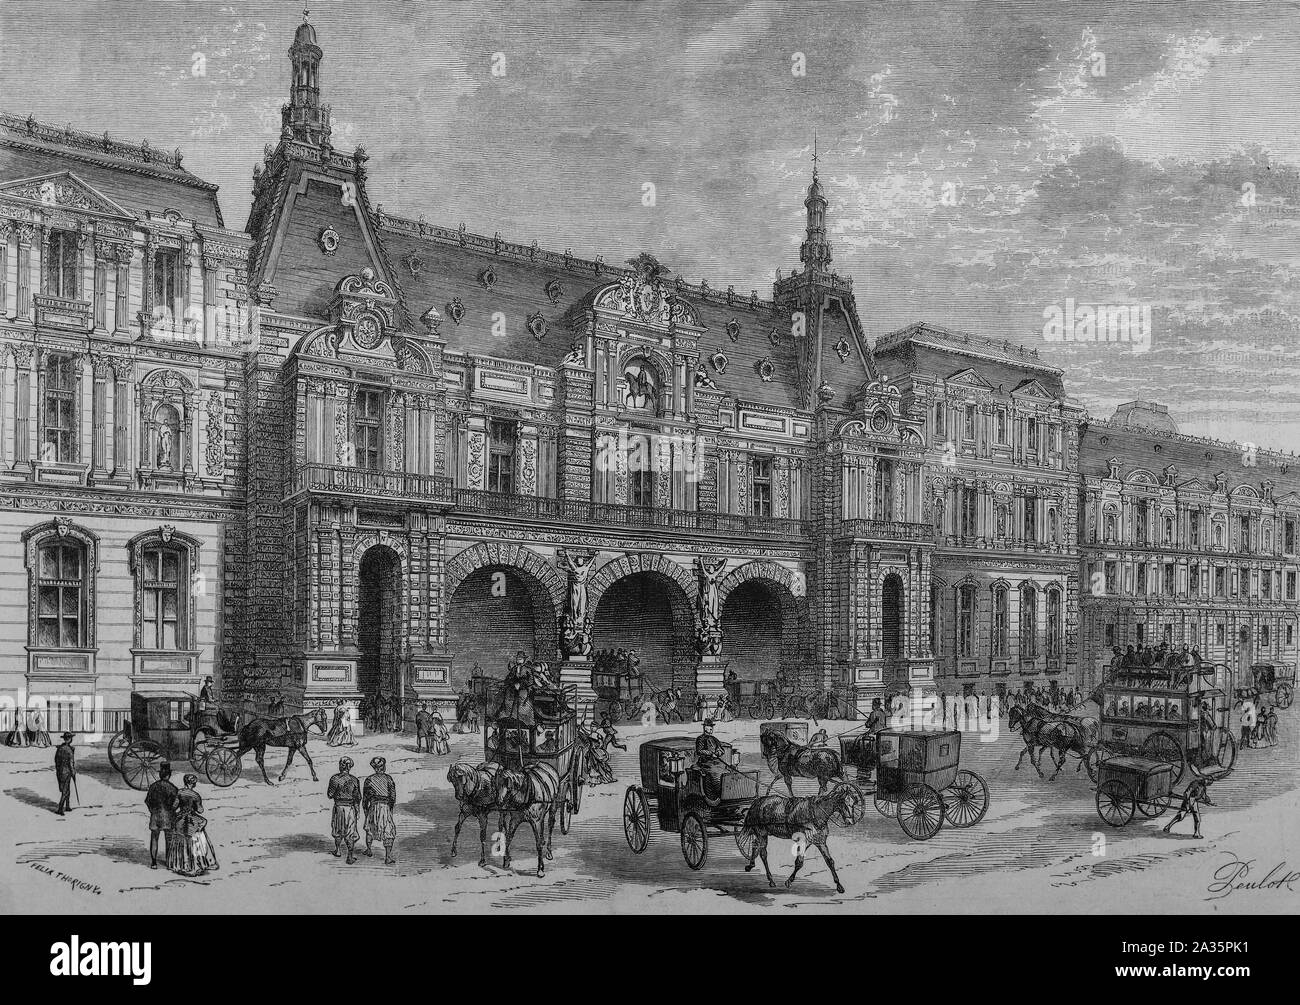 Paris, Frankreich - Oktober 05, 2019: Blick auf den Louvre, Vintage eingravierten Abbildung. Le Monde Ilustre, 1869. Stockfoto